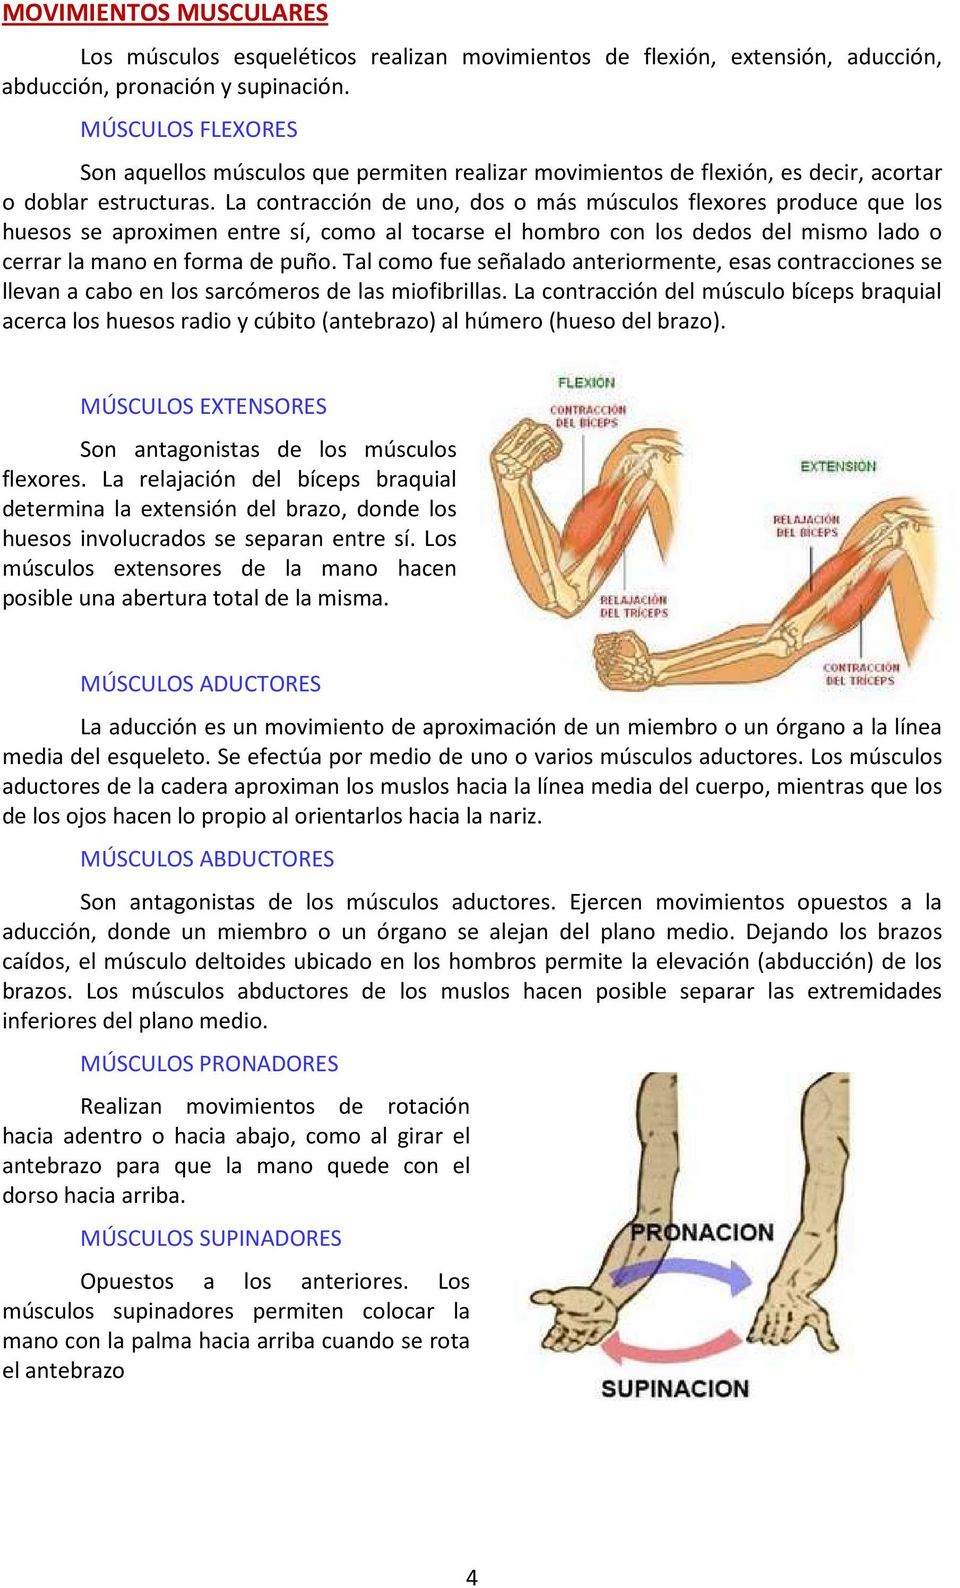 La contracción de uno, dos o más músculos flexores produce que los huesos se aproximen entre sí, como al tocarse el hombro con los dedos del mismo lado o cerrar la mano en forma de puño.